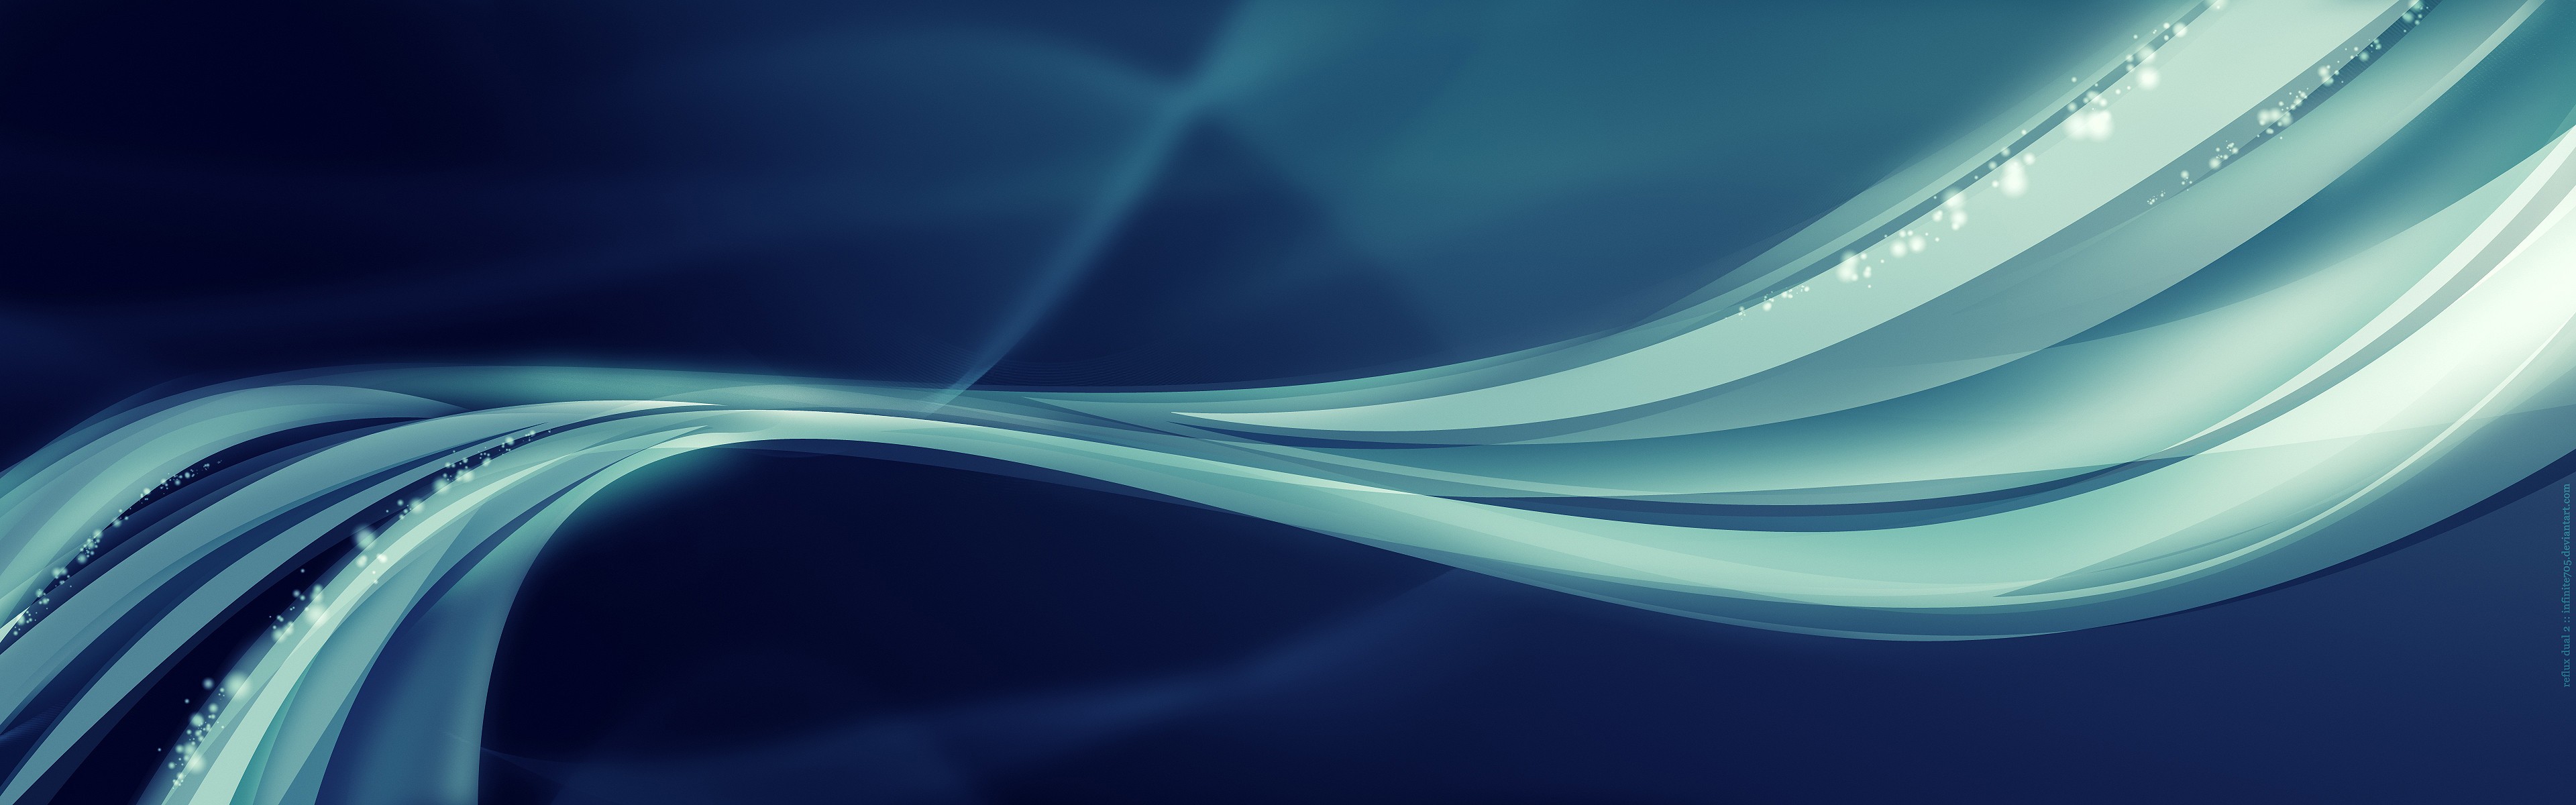 General 3840x1200 minimalism digital art blue background waveforms shapes blue